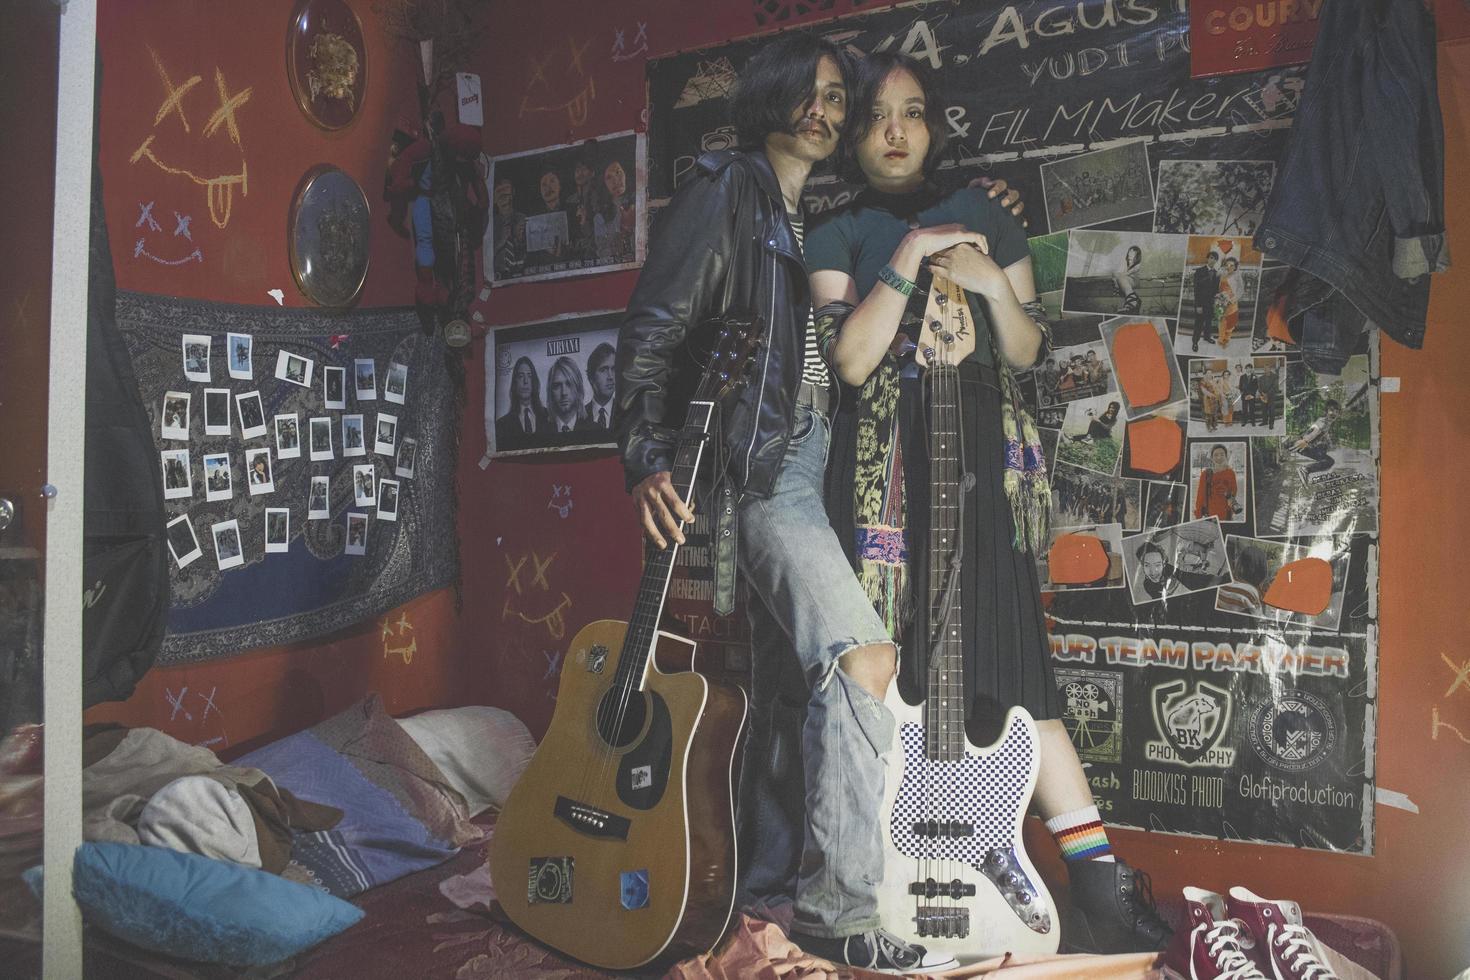 jakarta, indonesien, 2021 - ungt par som står i ett rum fullt av rock and roll-memorabilia foto